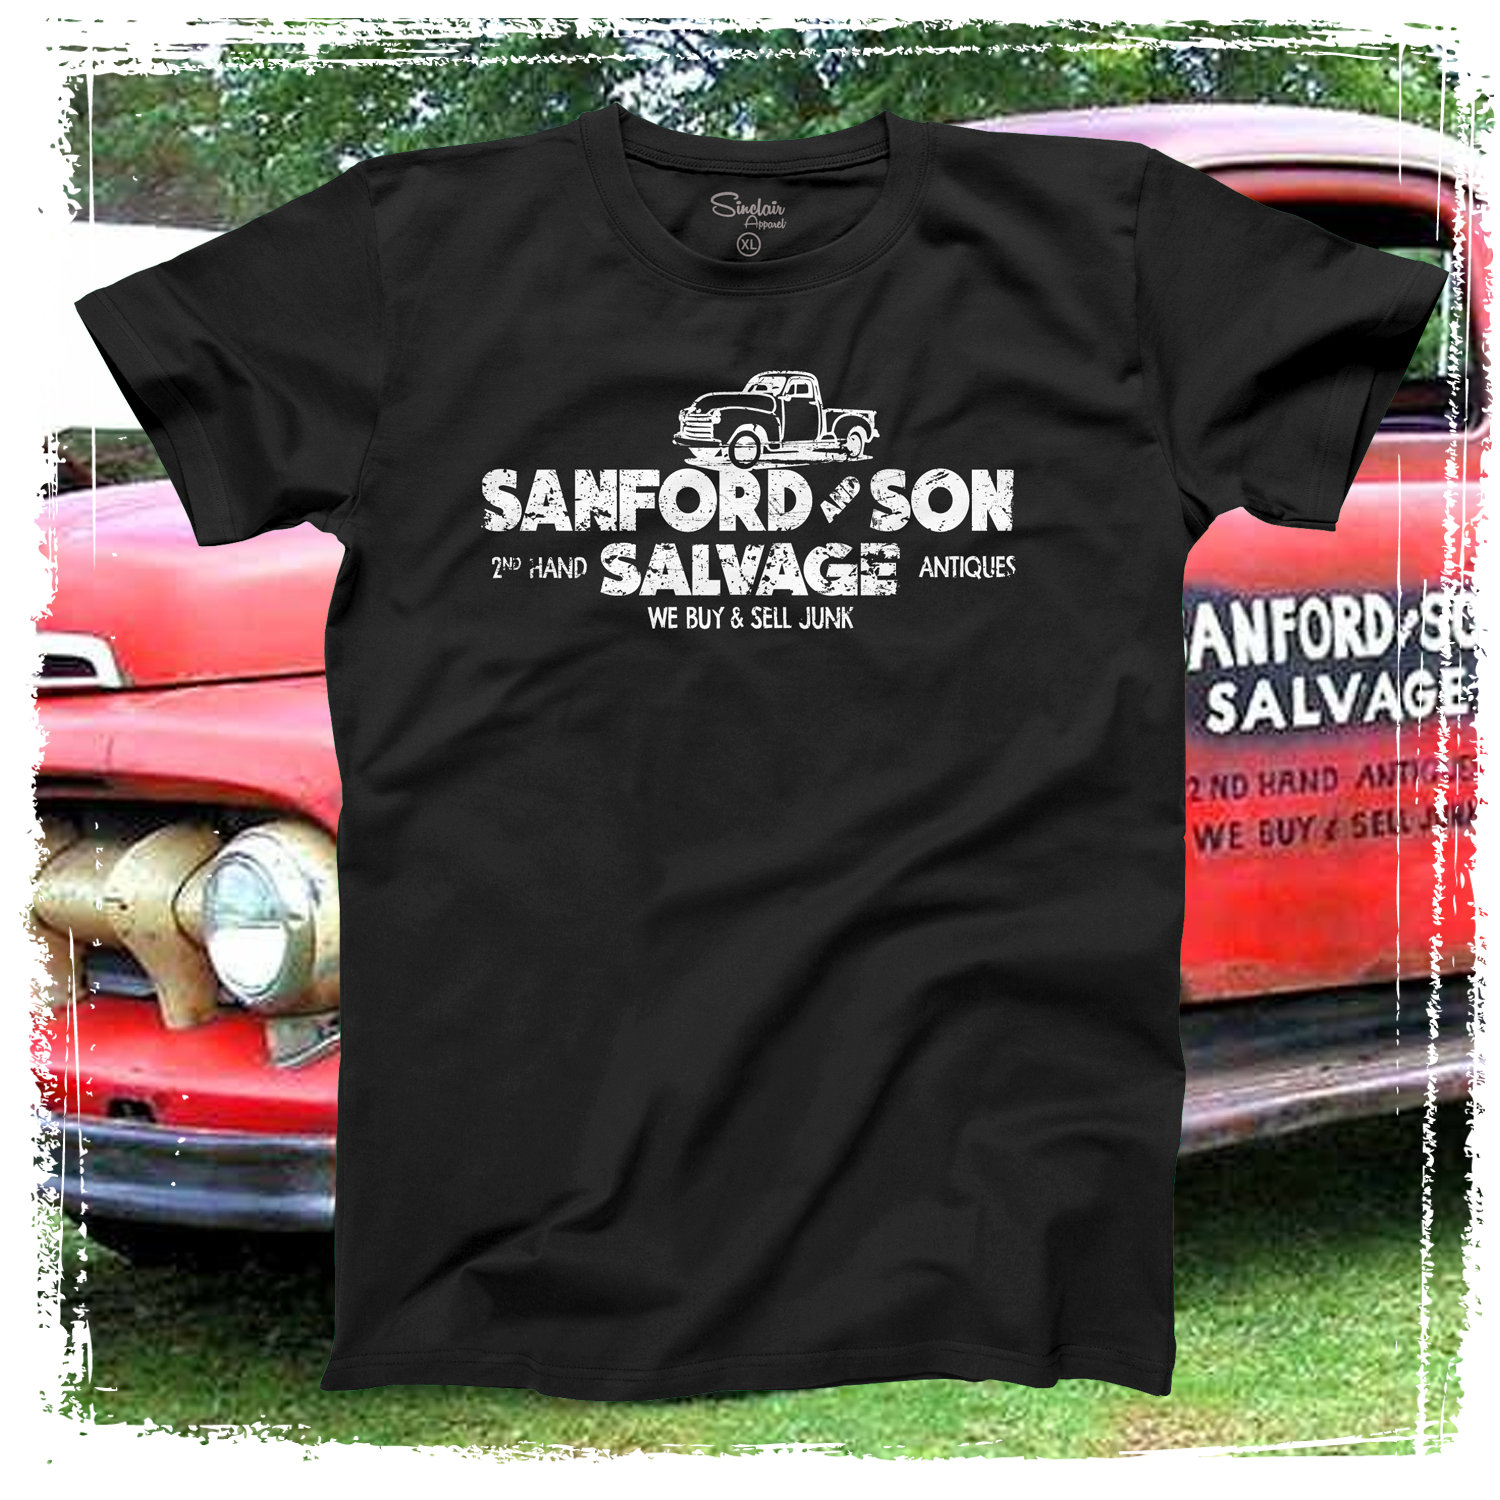 Sanford & Son Salvage